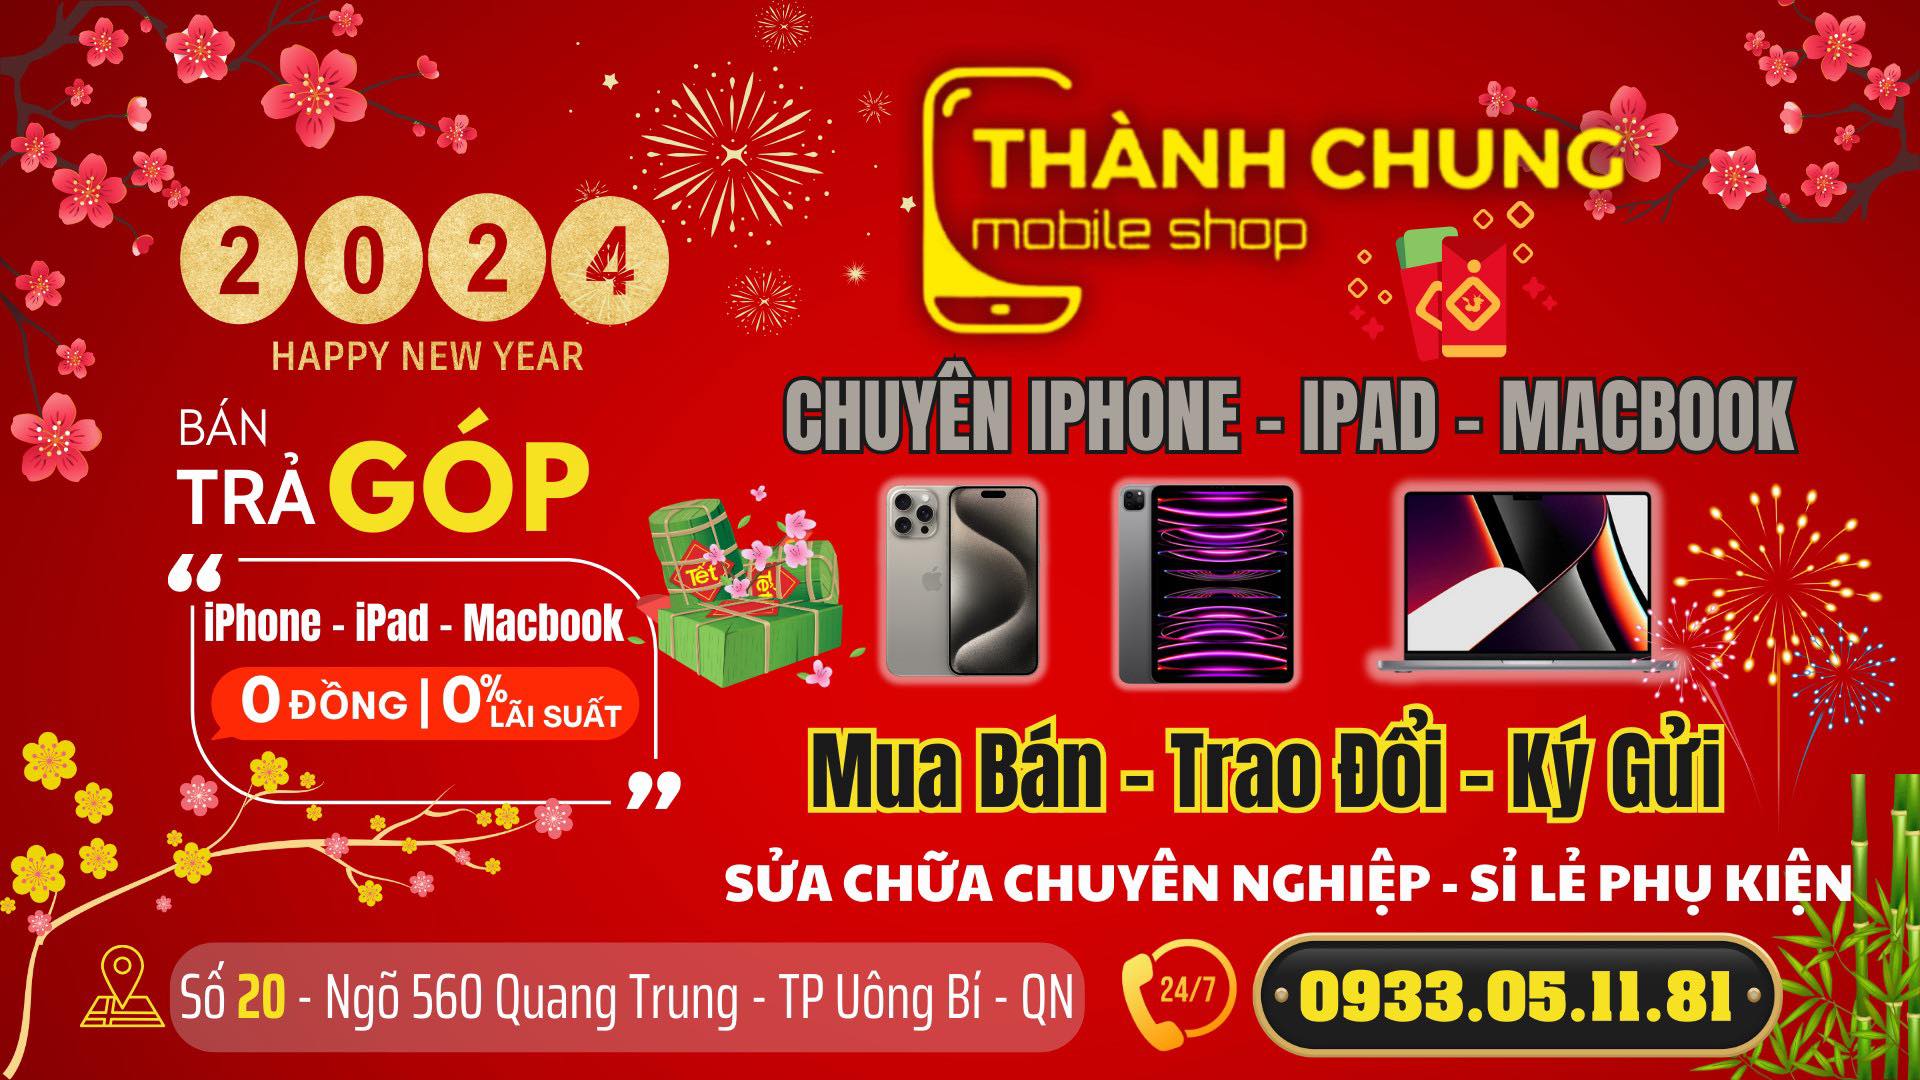 Thành Chung Mobile Shop ảnh 1